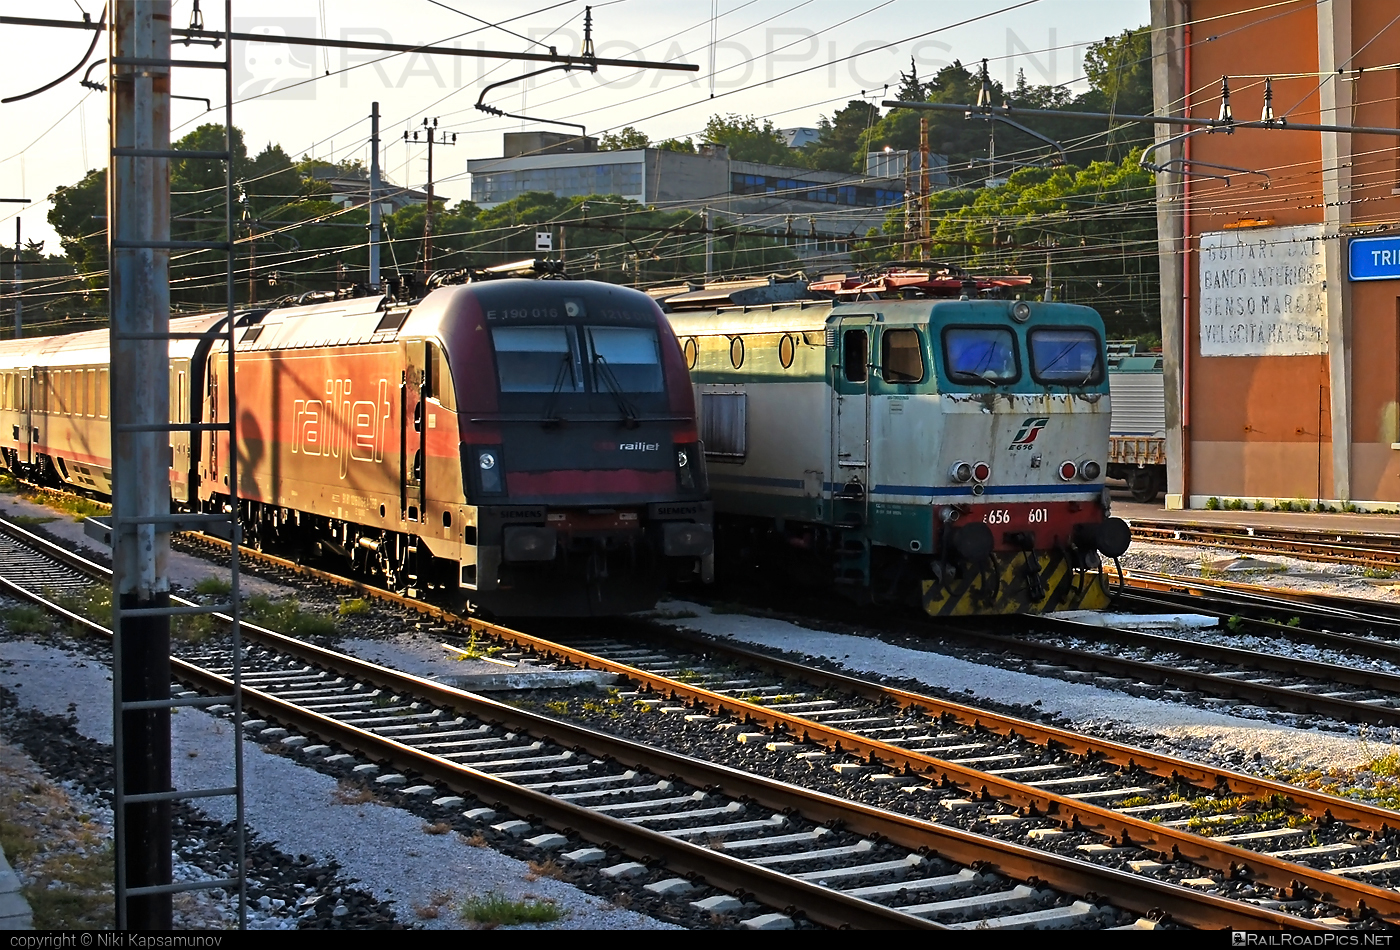 FS Class E.656 - E656 601 operated by Trenitalia S.p.A. #caimano #classE656 #e656locomotive #ferroviedellostato #fs #fsClassE656 #fsitaliane #trenitalia #trenitaliaspa